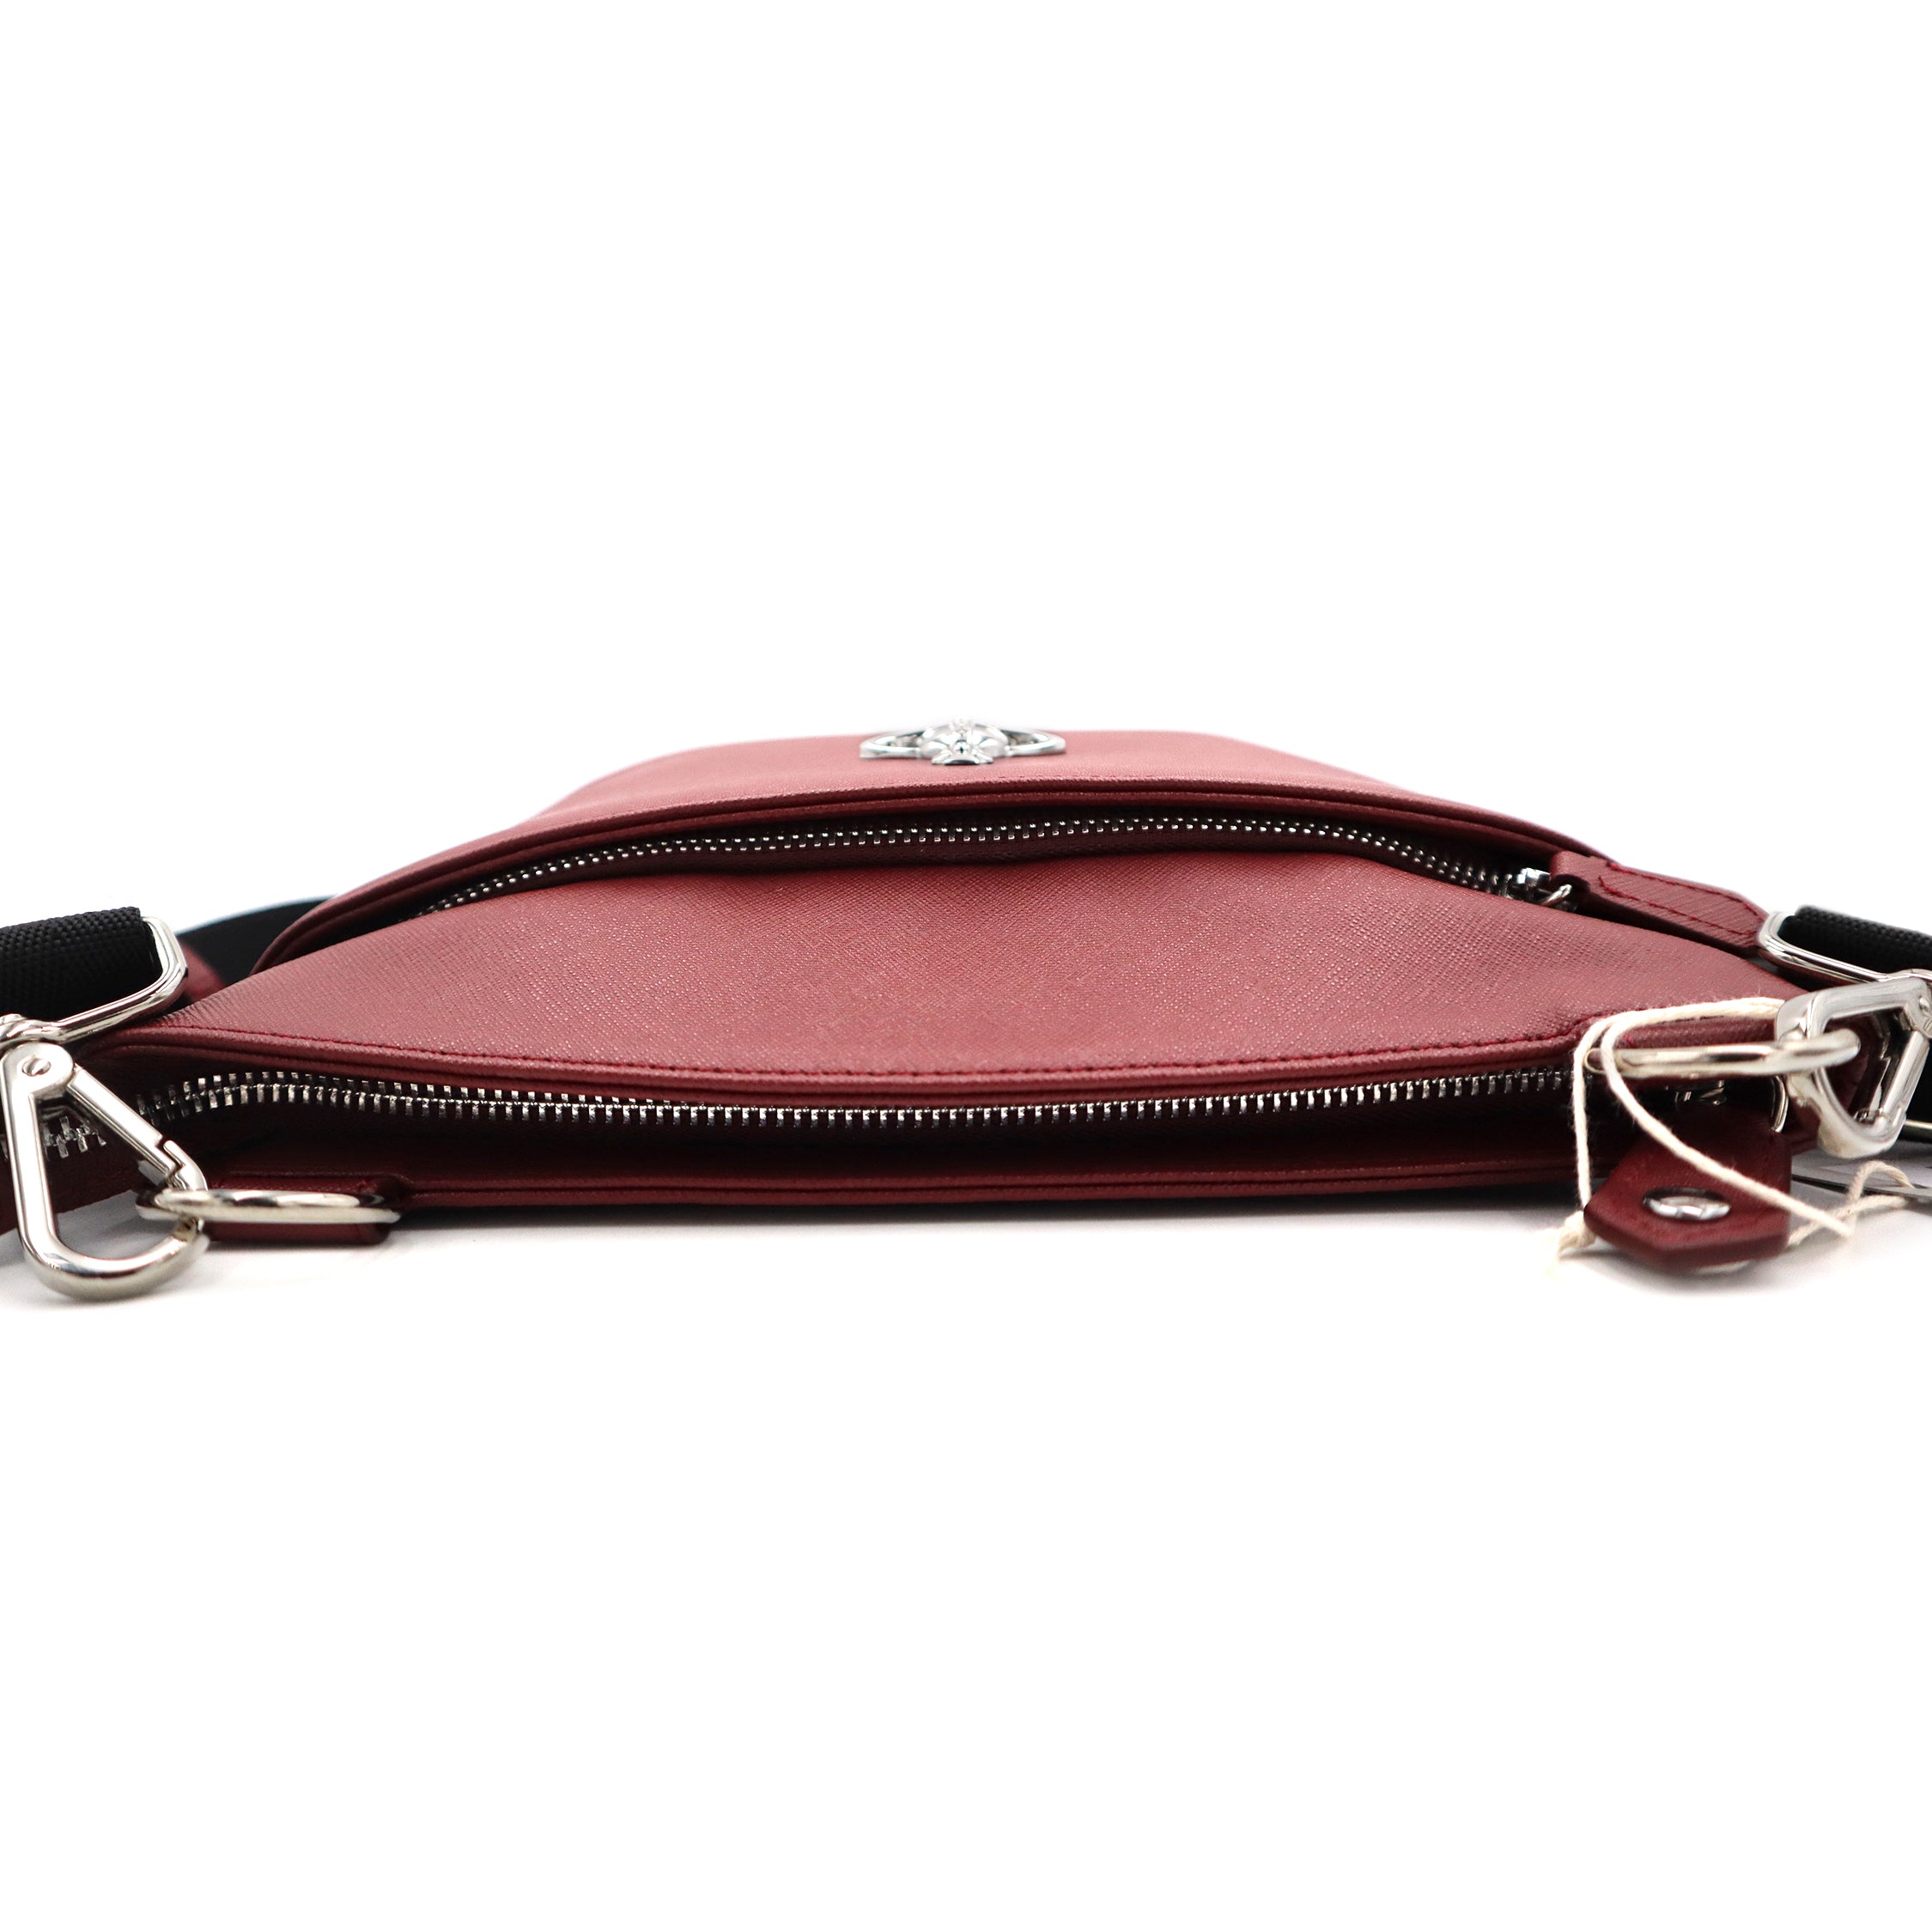 Vivienne Westwood Sacoche Leather Shoulder Bag Red